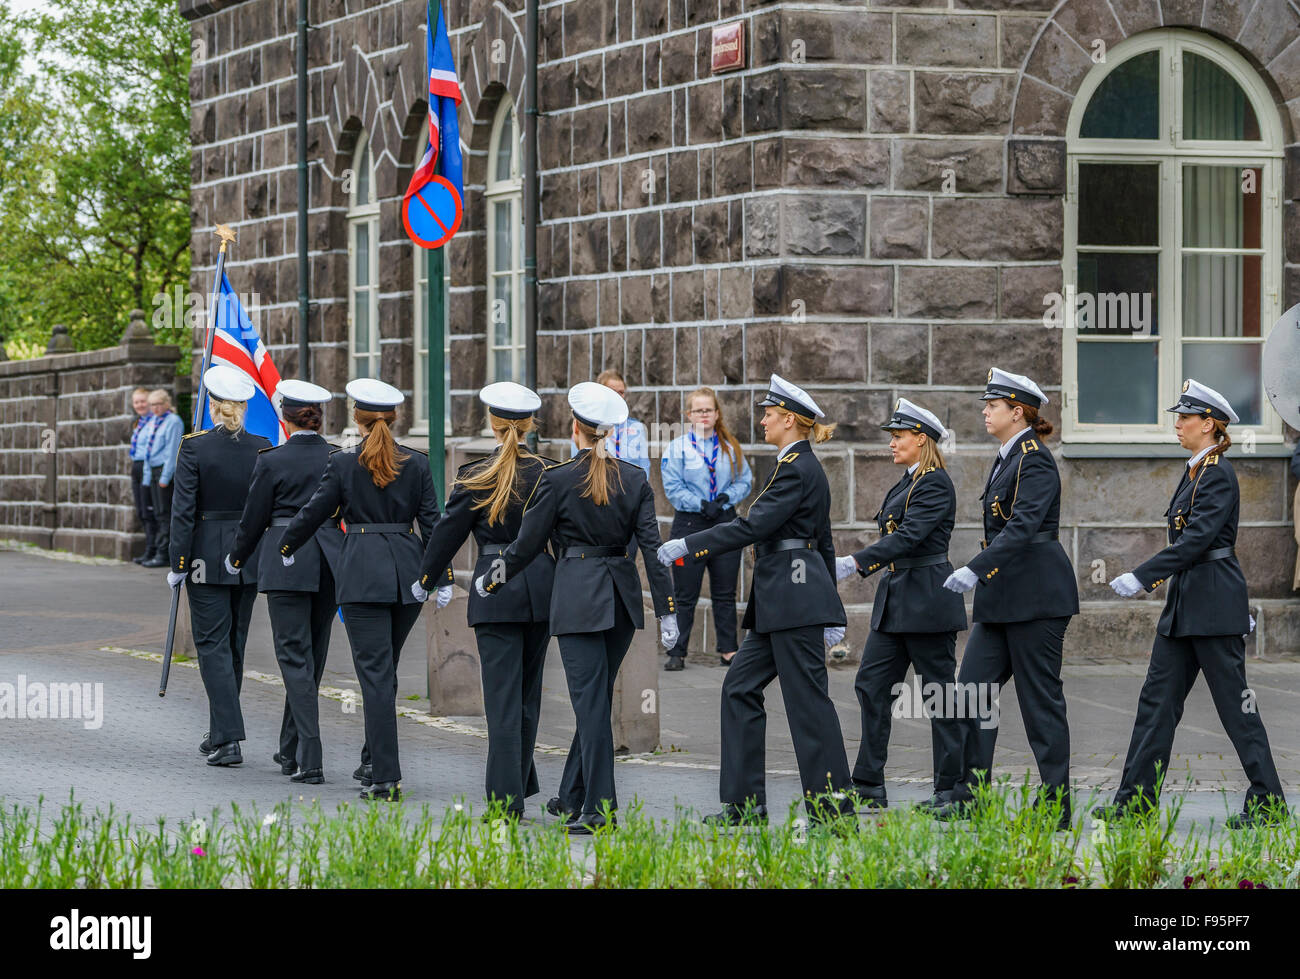 Policías mujeres desfilan durante las celebraciones del día de la independencia de Islandia, Junio 17th, Reykjavik, Iceland-2015 Foto de stock